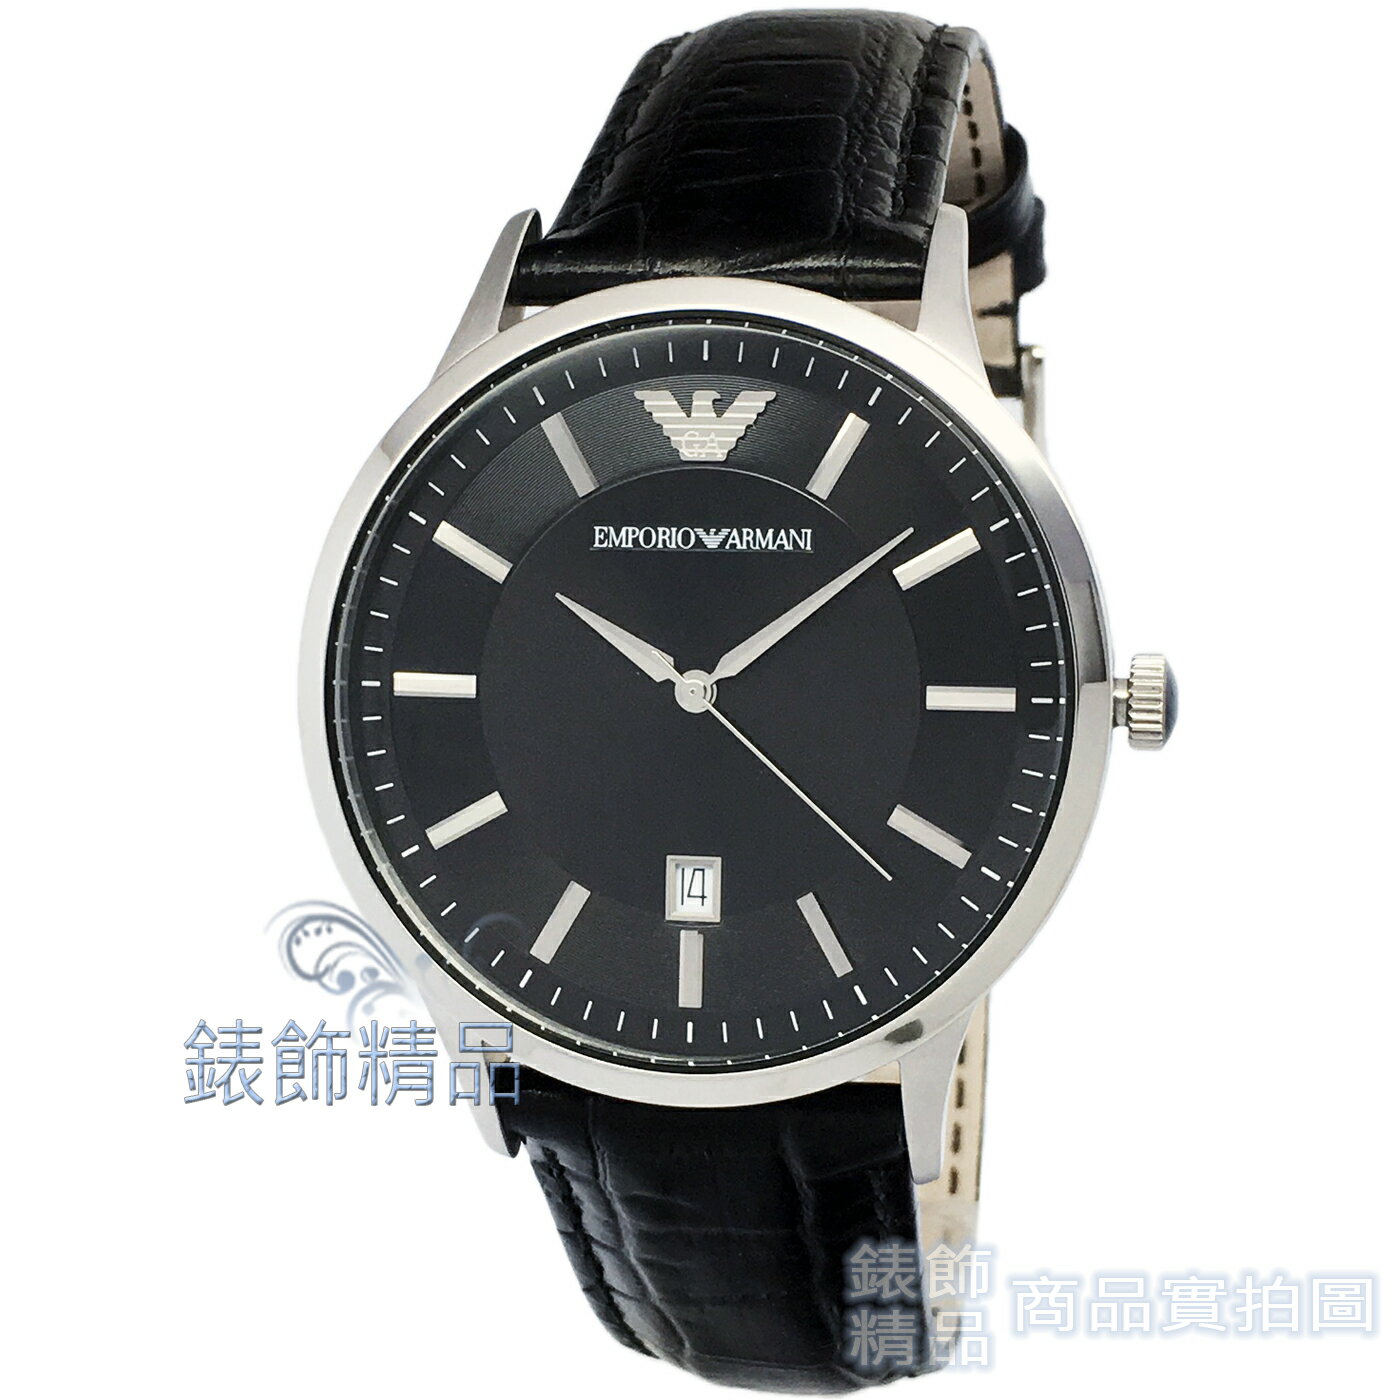 【錶飾精品】ARMANI 手錶 AR2411 亞曼尼表 都會型男 日期 黑面 壓紋黑皮帶 男錶